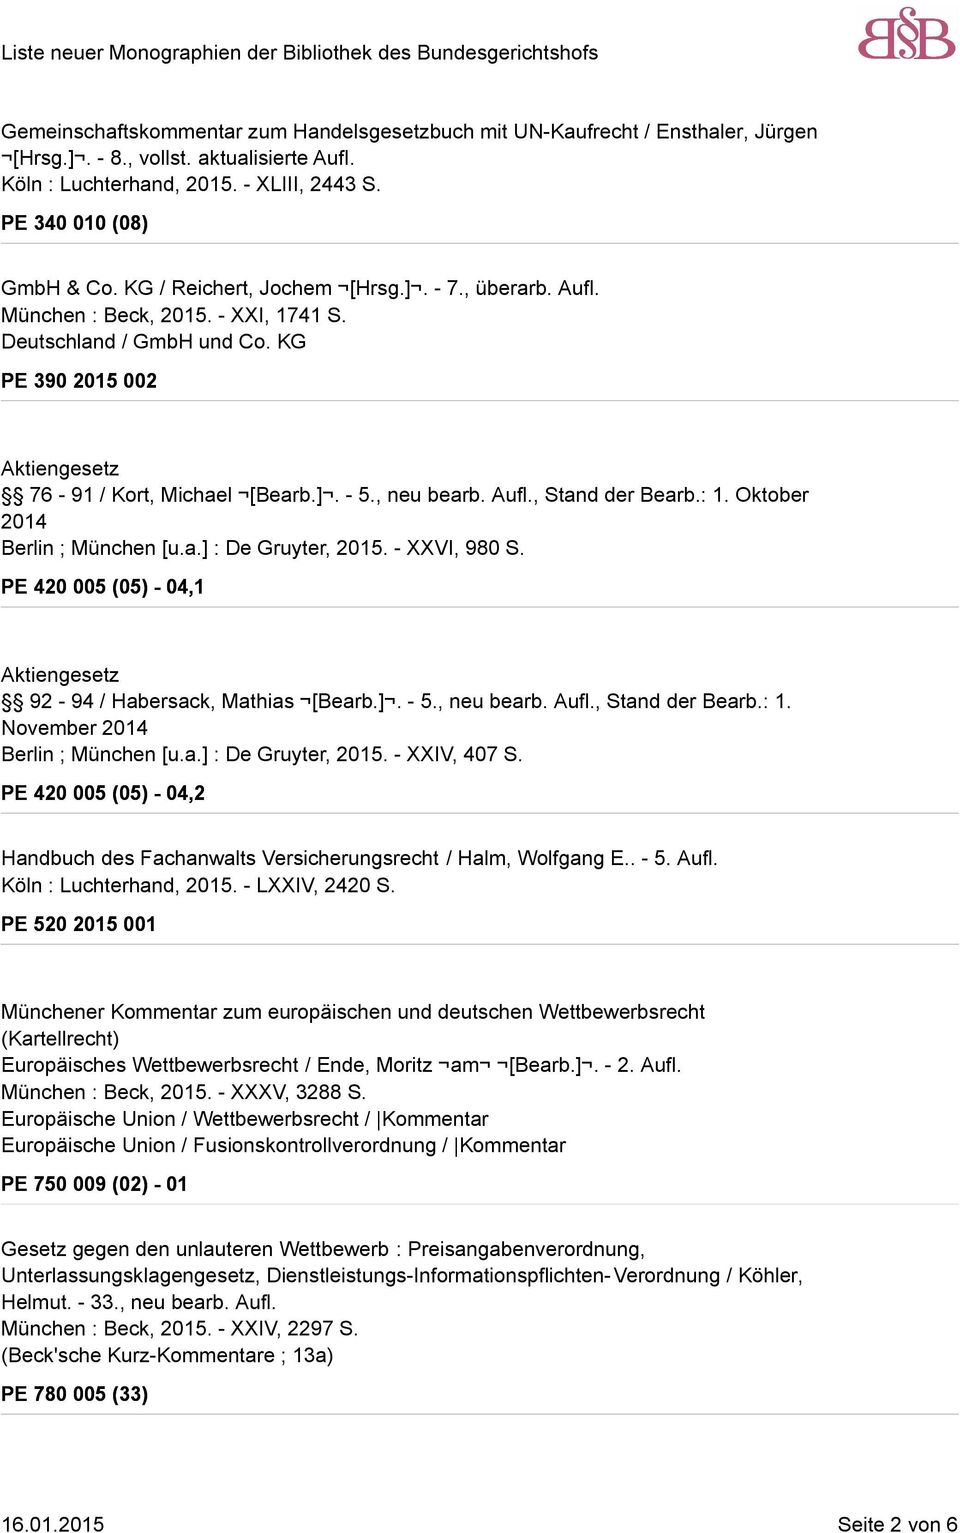 Aufl., Stand der Bearb.: 1. Oktober 2014 Berlin ; München [u.a.] : De Gruyter, 2015. - XXVI, 980 S. PE 420 005 (05) - 04,1 Aktiengesetz 92-94 / Habersack, Mathias [Bearb.]. - 5., neu bearb. Aufl.